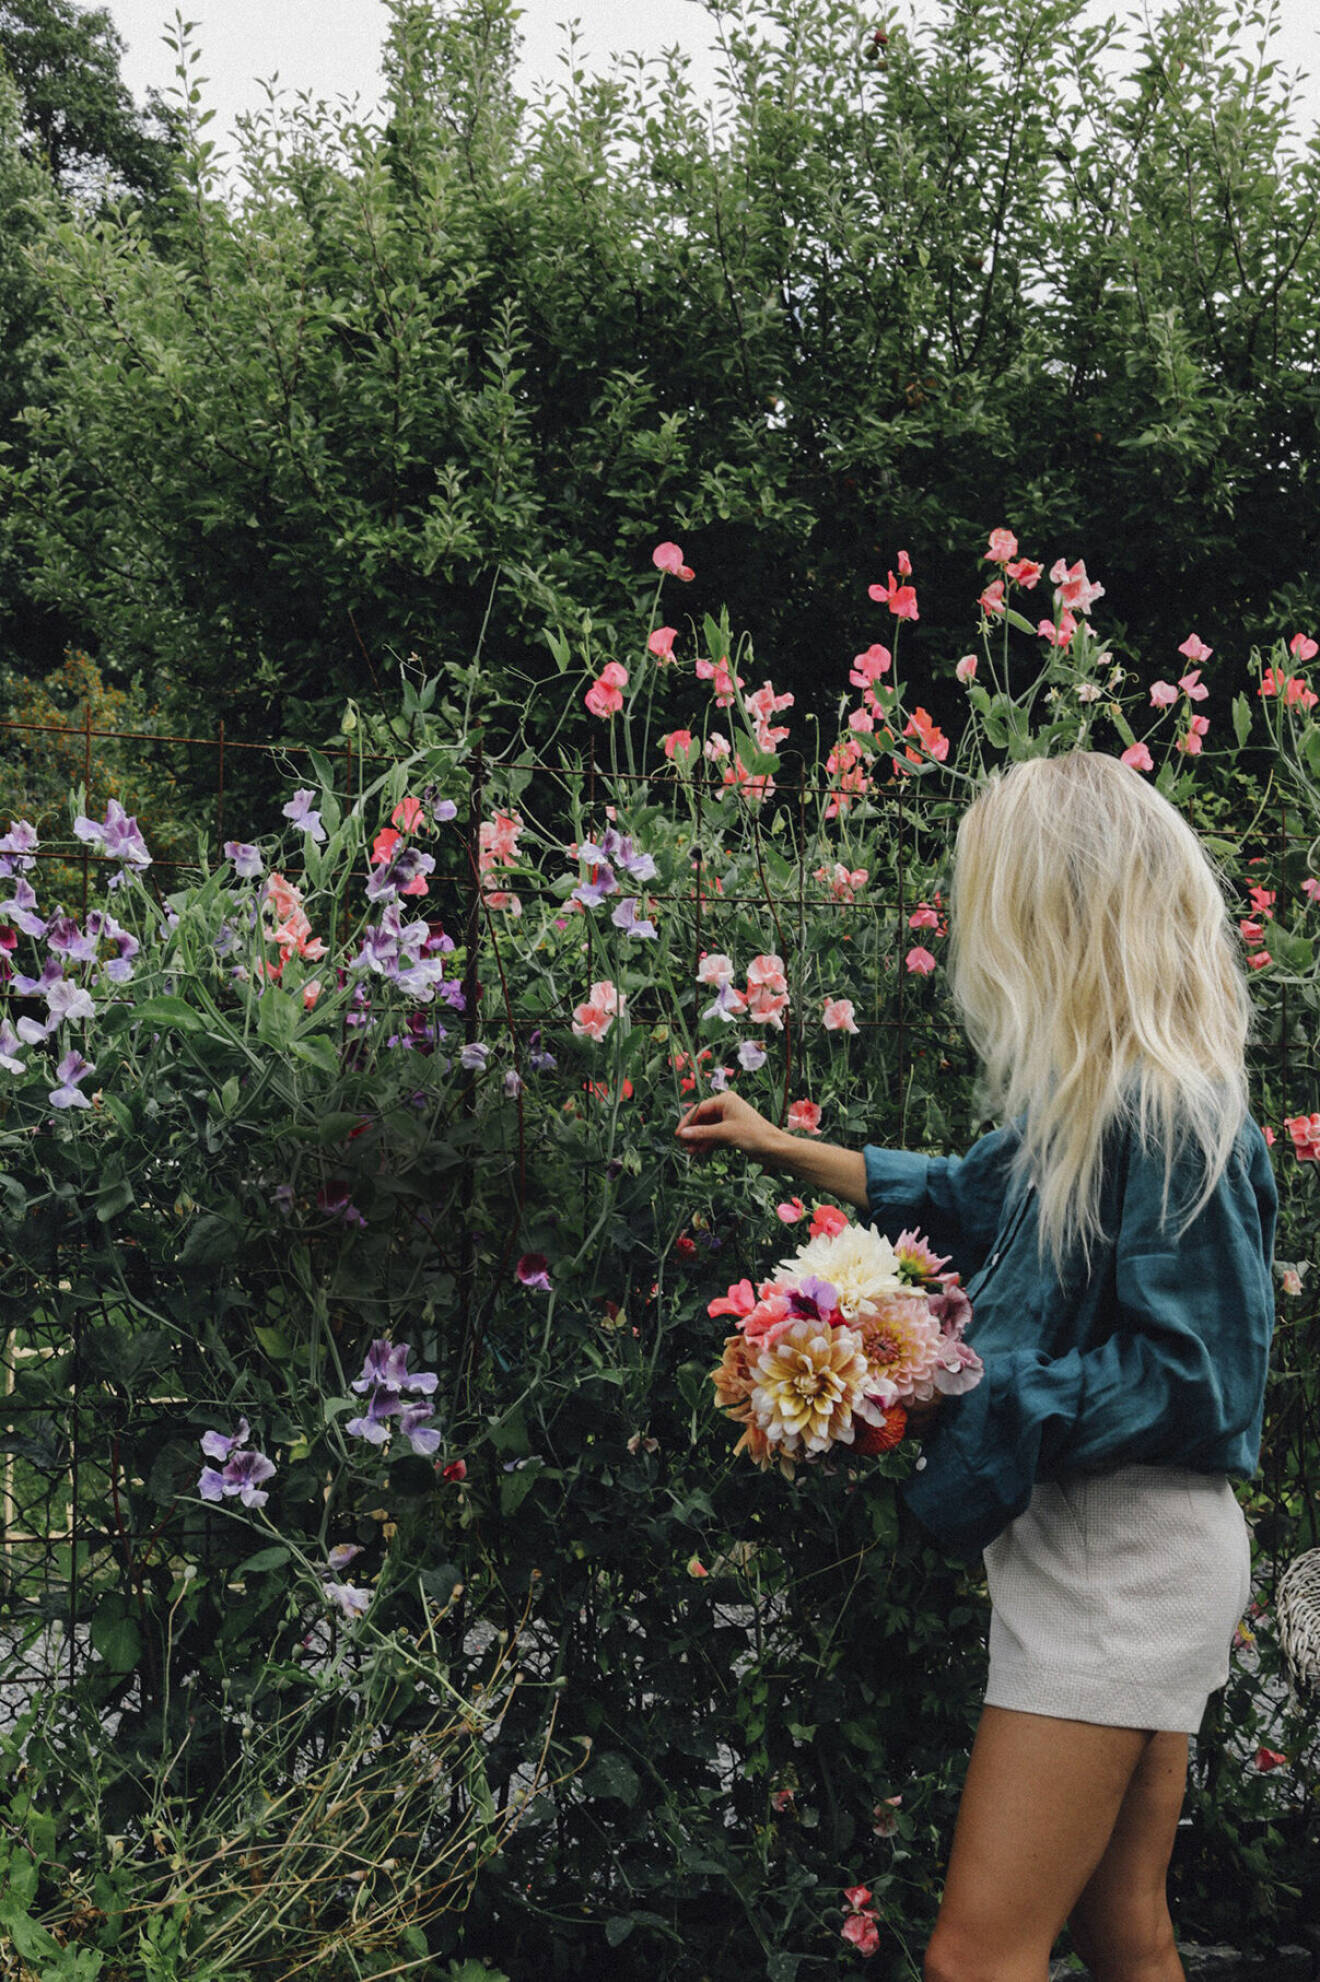 Trädgårdsinfluencern Elin Lannsjö odlar massor av luktärter i sin snittblomsodling